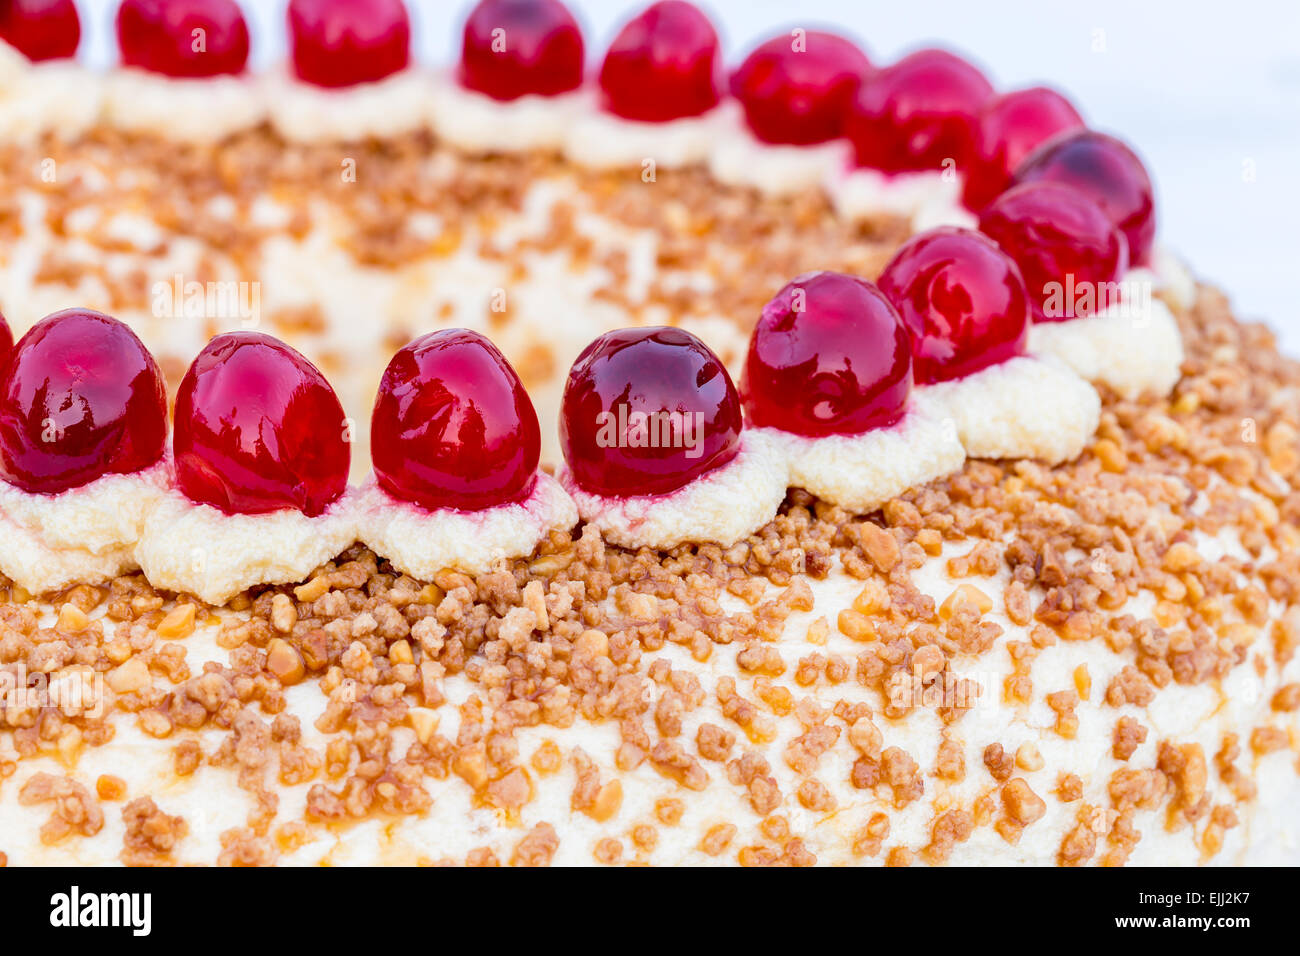 Frankfurter Kranz with cherries in detail. Stock Photo